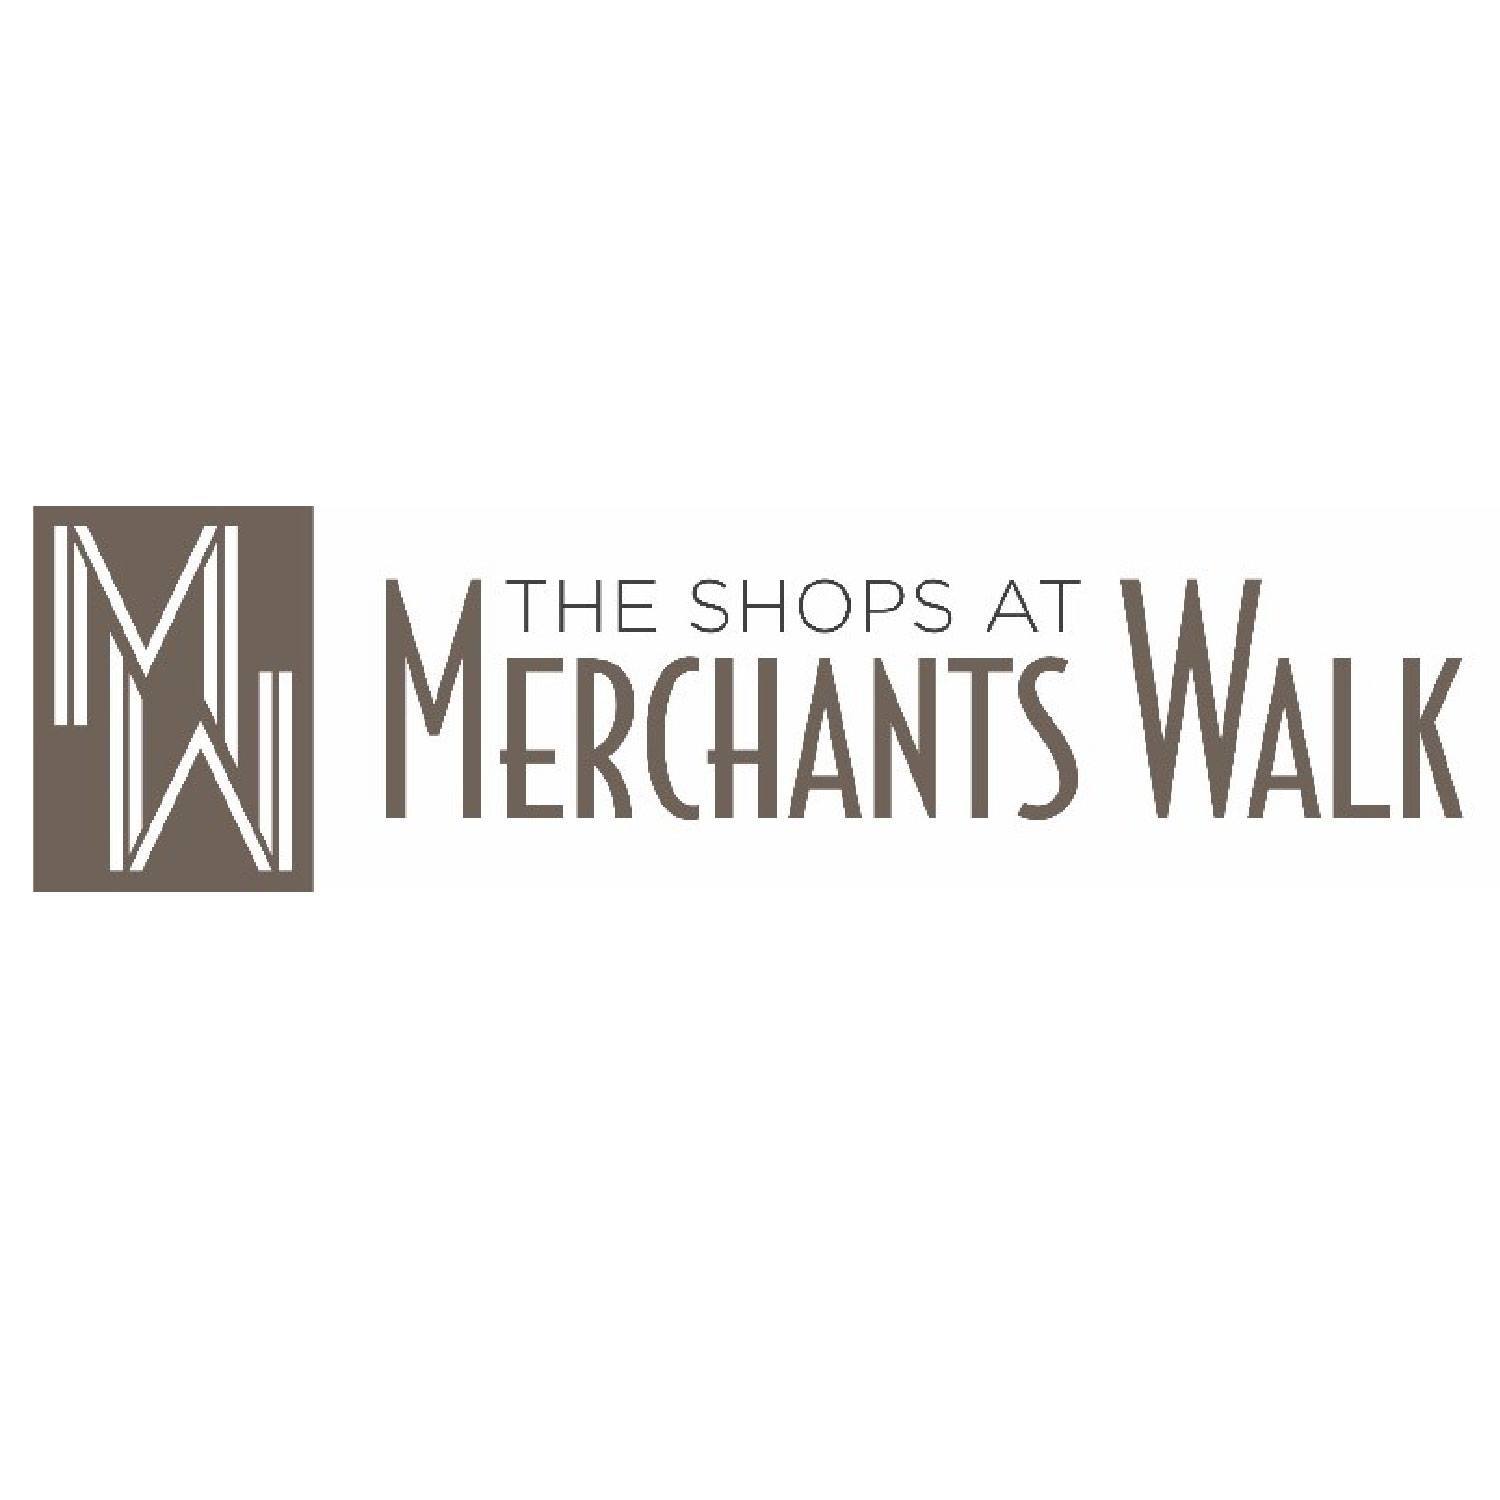 The Shops at Merchants Walk